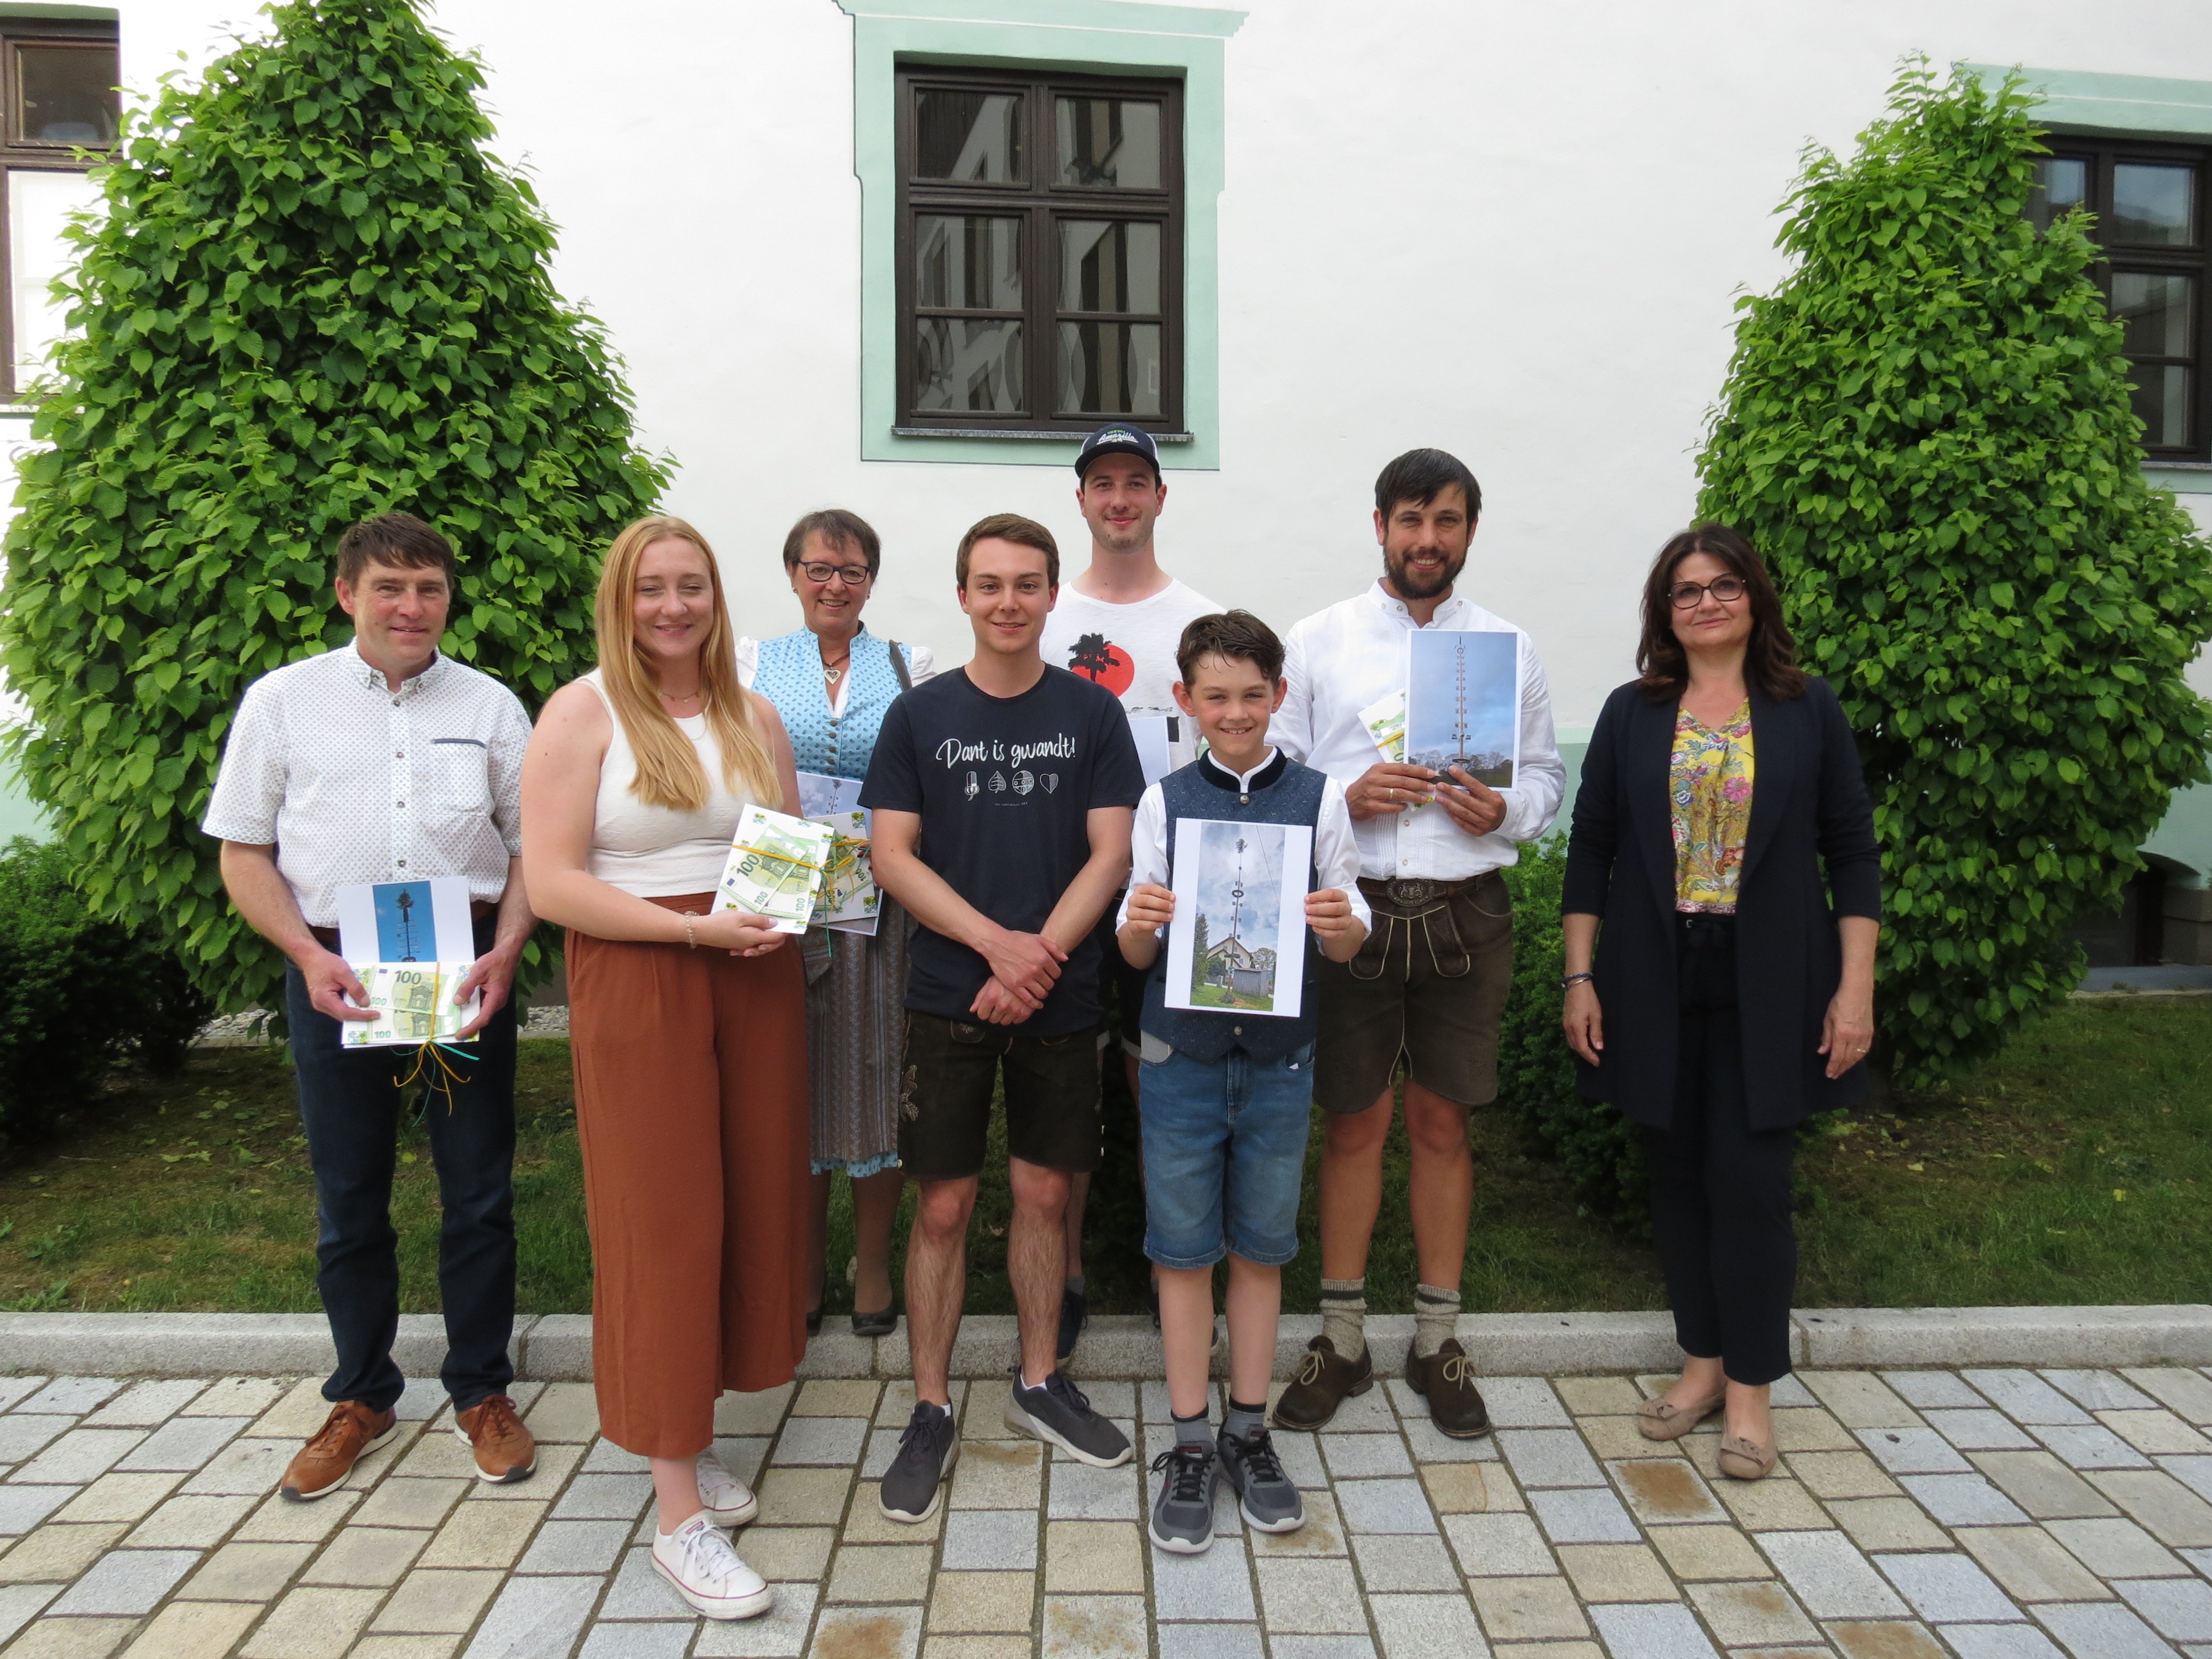 Maibaumwettbewerb im Landkreis - Gewinner erhielten jeweils 200 Euro